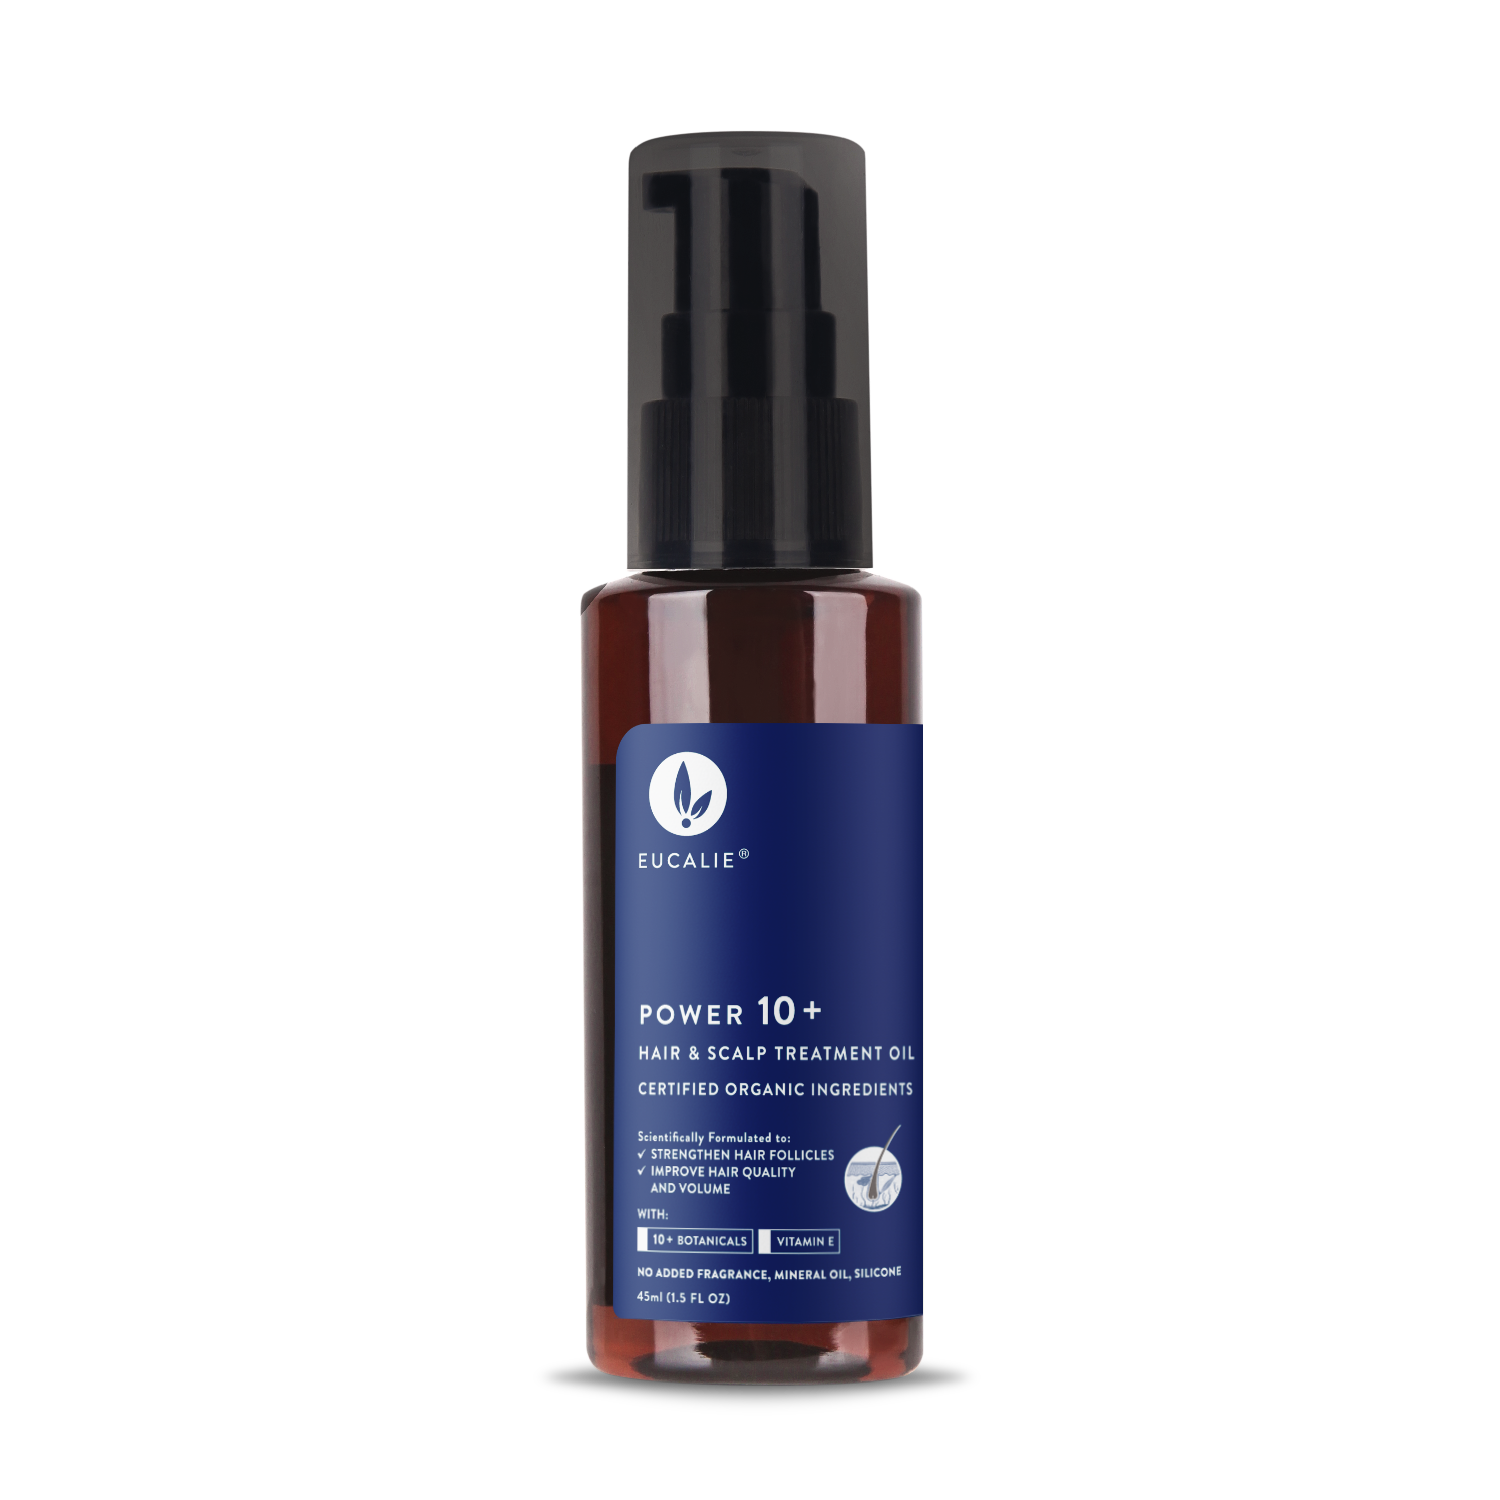 Eucalie Organics Eucalie Organic Hair & Scalp Treatment Oil â€“ Power 10+